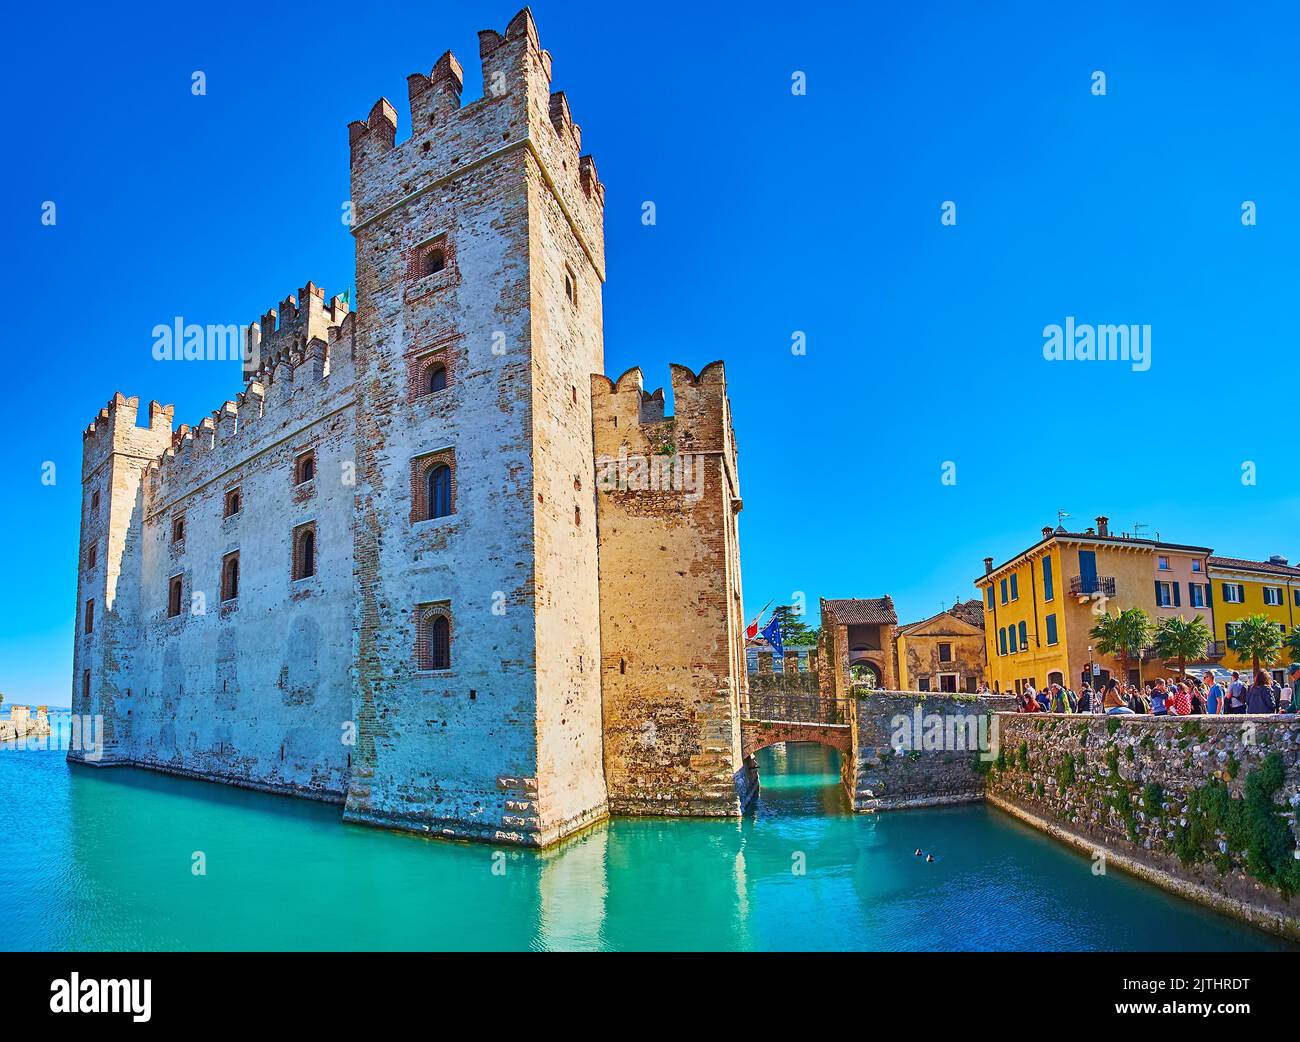 BRESCIA, ITALIEN - 10. APRIL 2022: Die hohen Türme und erhaltenen Stadtmauern des mittelalterlichen Castello Scaligero, umgeben von Graben und alten Stadthäusern, auf Einem Stockfoto